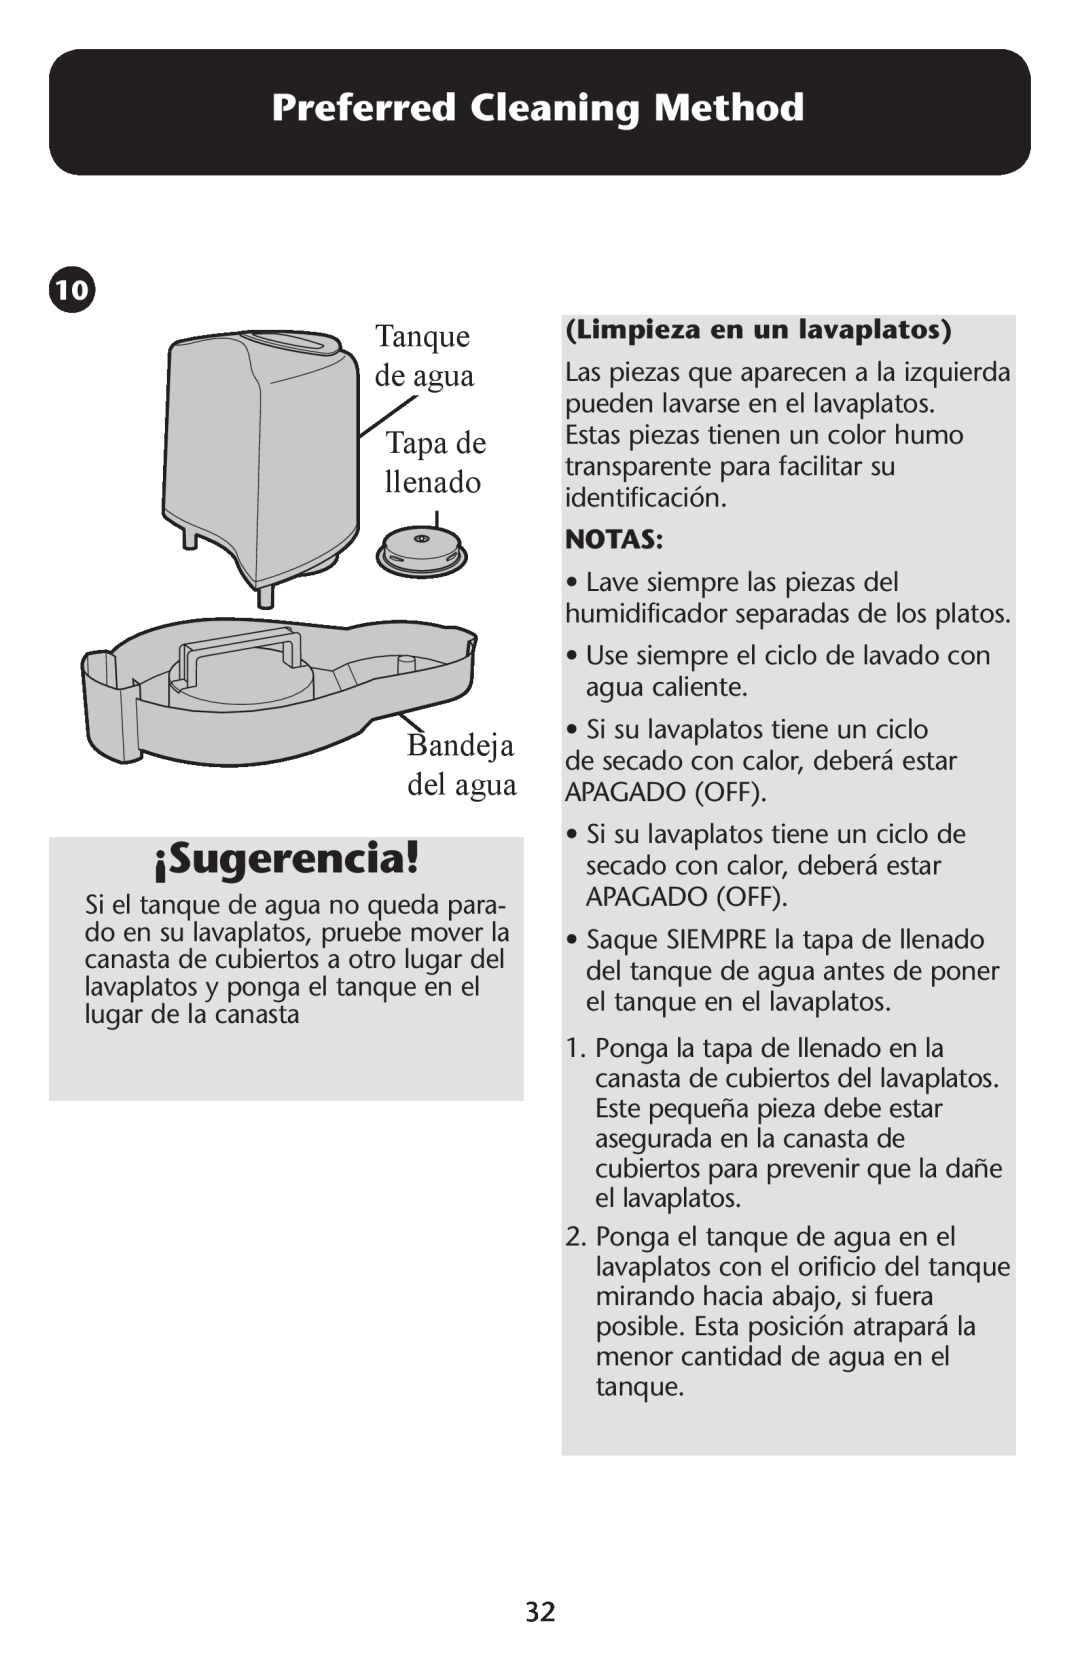 Graco ISPD023AB owner manual Tanque, deTaguank Tapa de, llenado, Limpieza en un lavaplatos, Notas, ¡Sugerencia 